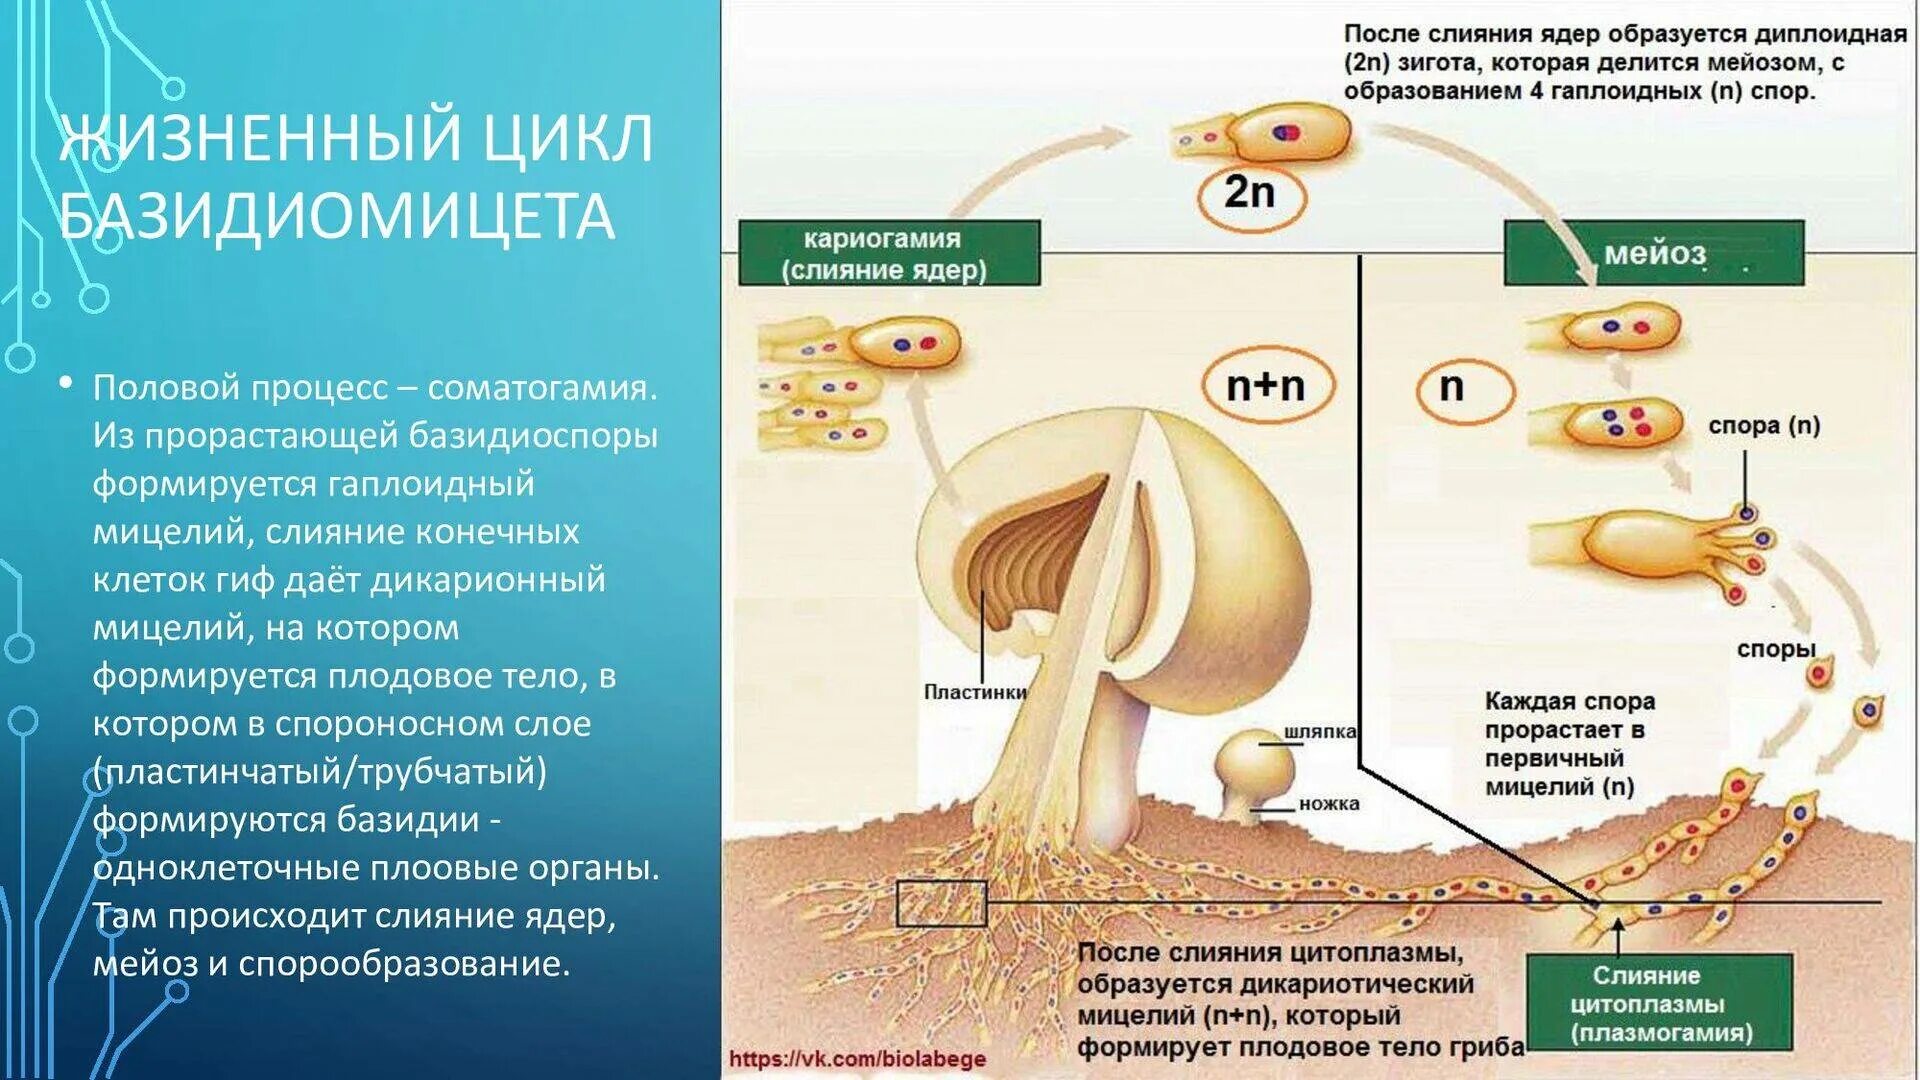 Что значит споры грибов. Жизненный цикл шляпочного гриба. Жизненный цикл гриба базидиомицета. Размножение шляпочного гриба схема. Жизненный цикл грибов схема.